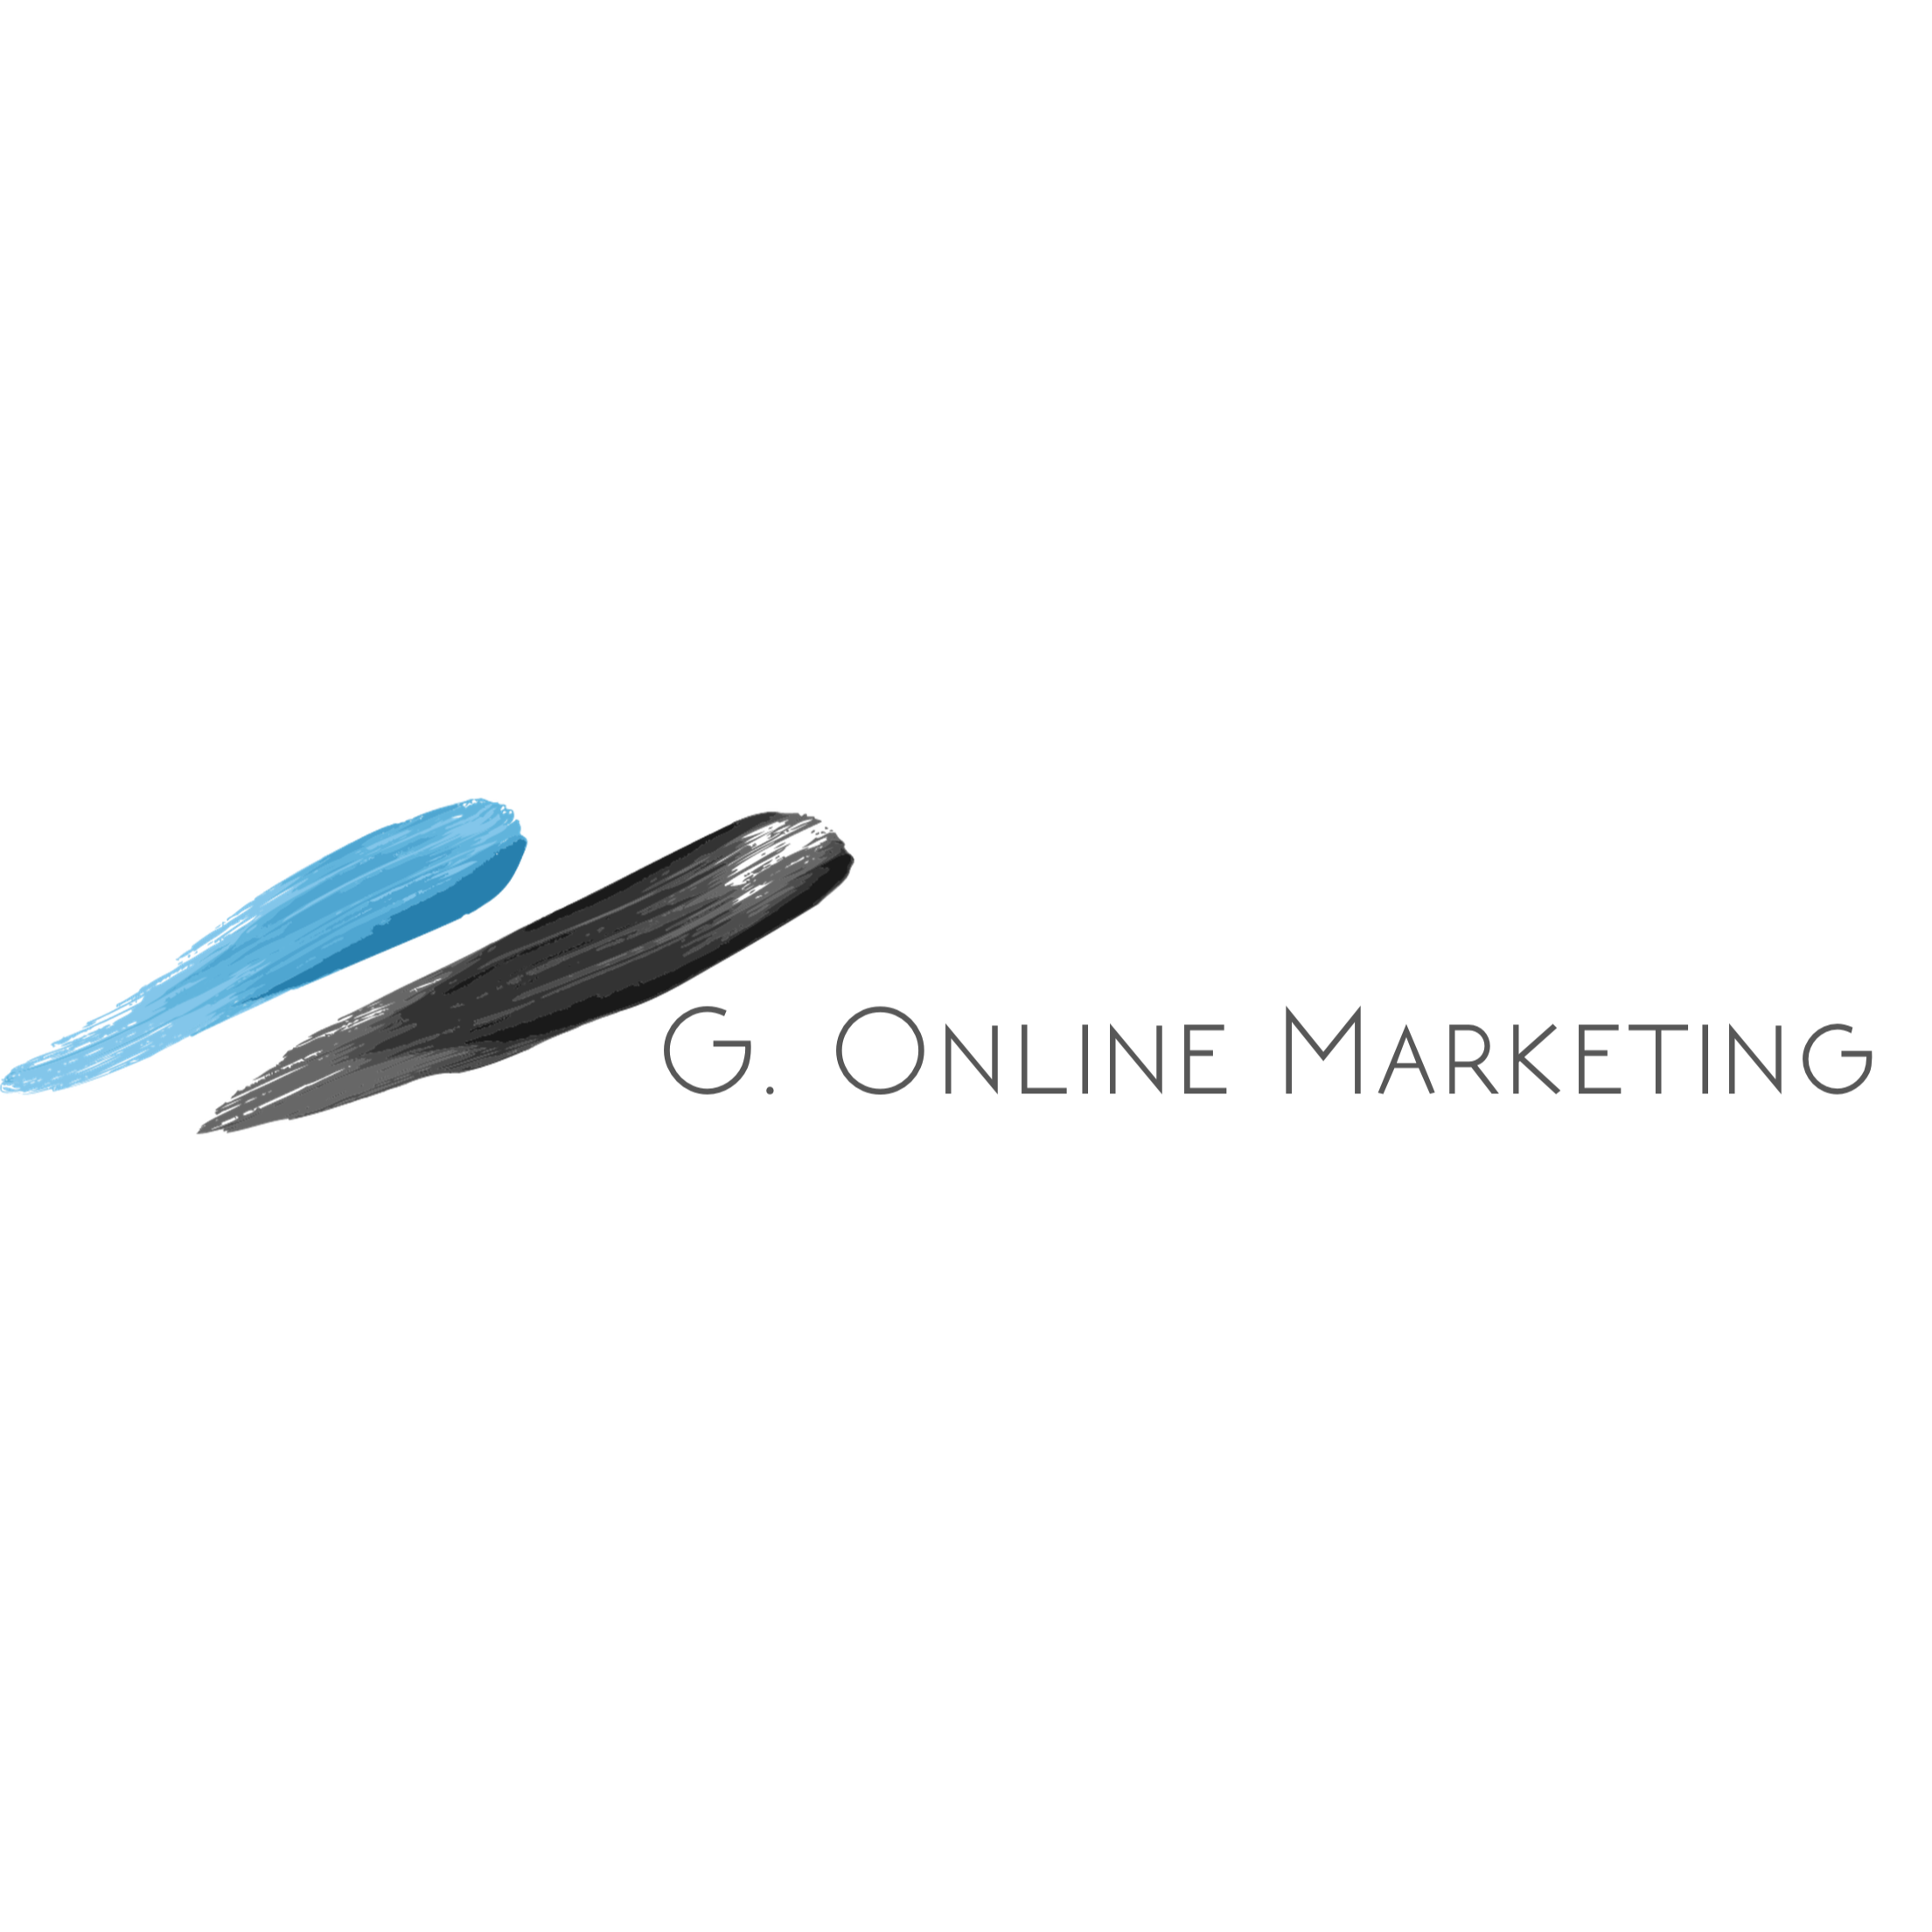 G. Online Marketing  